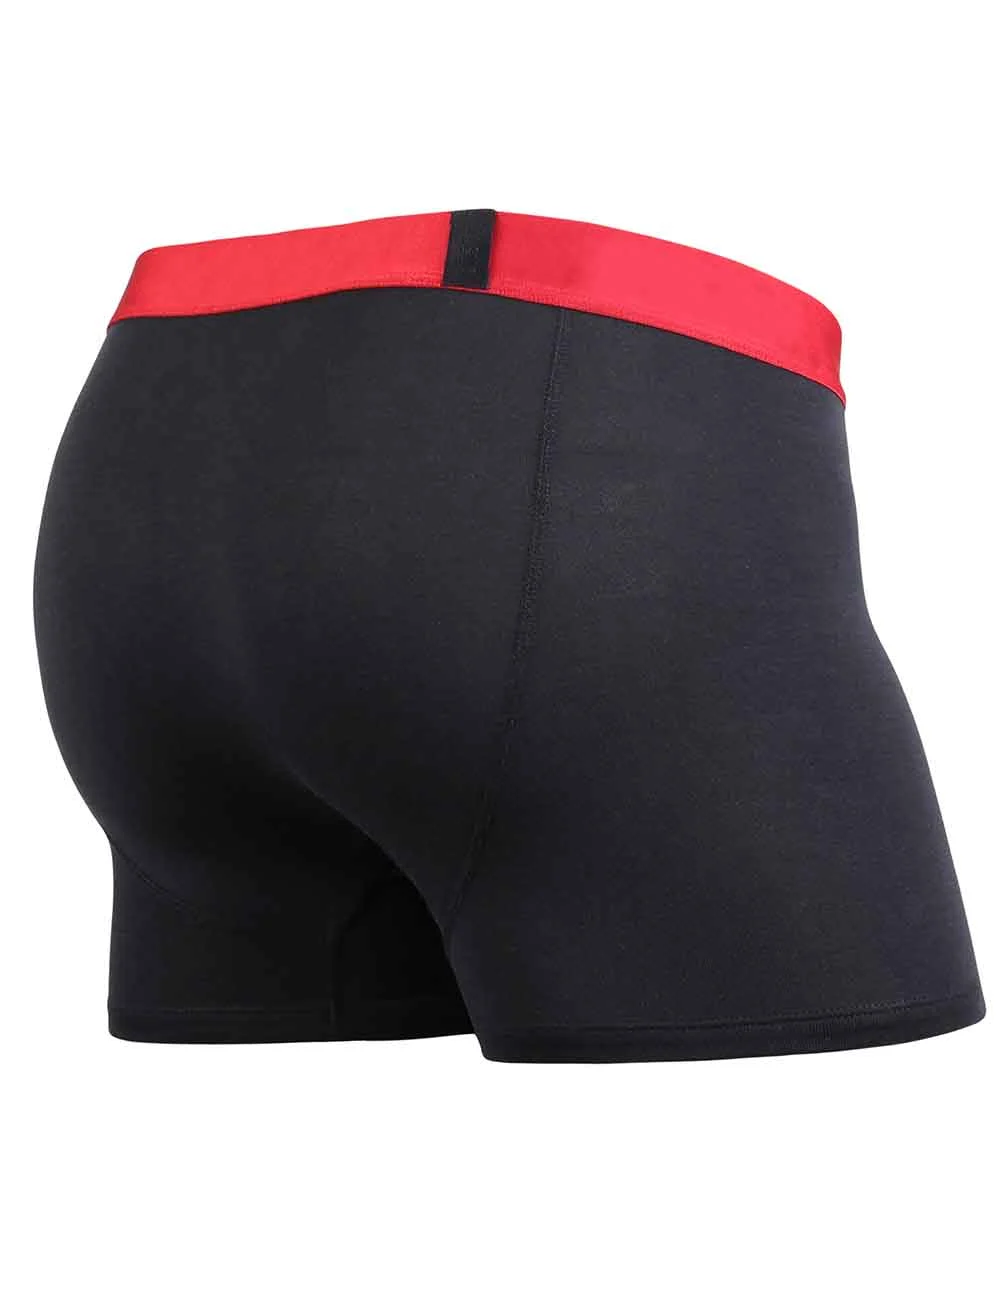 Boxer court LITE Noir & Rouge Sous-vêtement ultra léger et discret en Tencel™ Modal